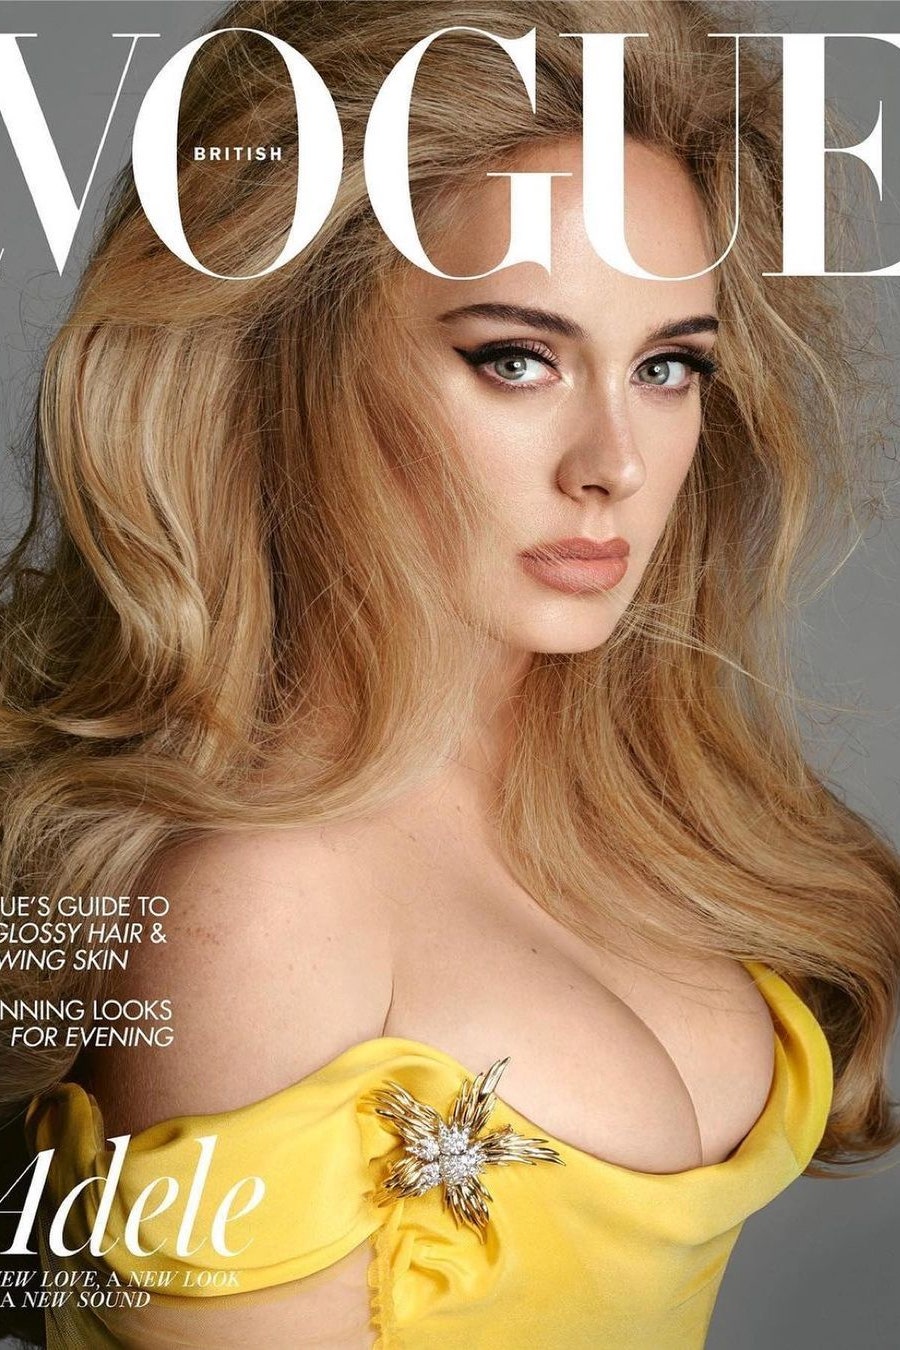 Суперобъемная укладка Адель на обложке британского Vogue